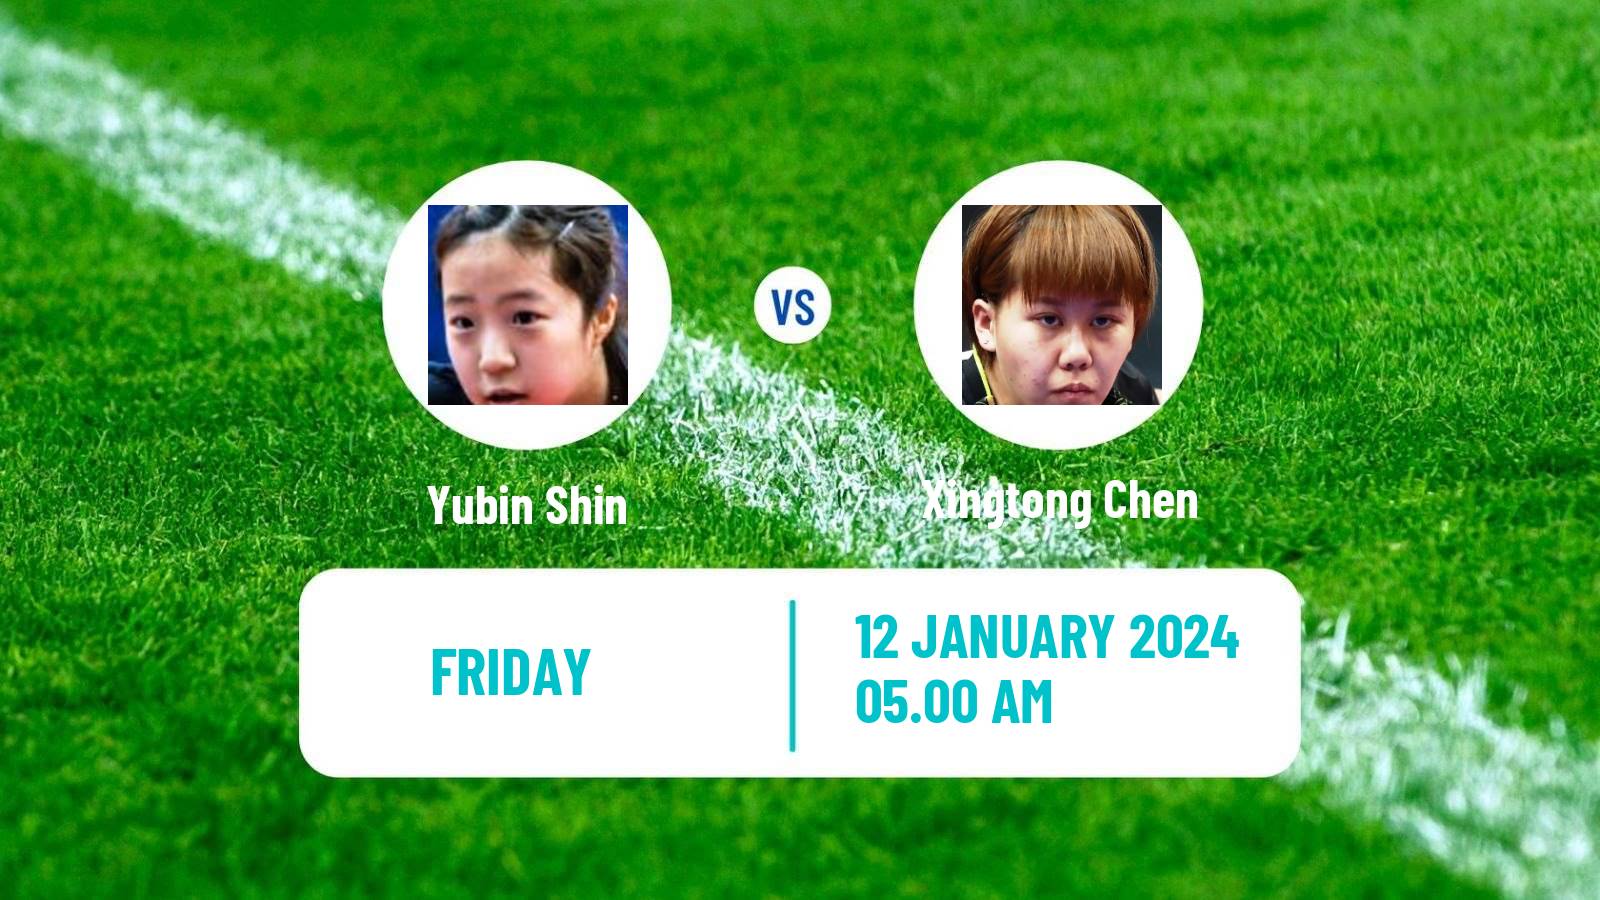 Table tennis Wtt Star Contender Doha Women Yubin Shin - Xingtong Chen